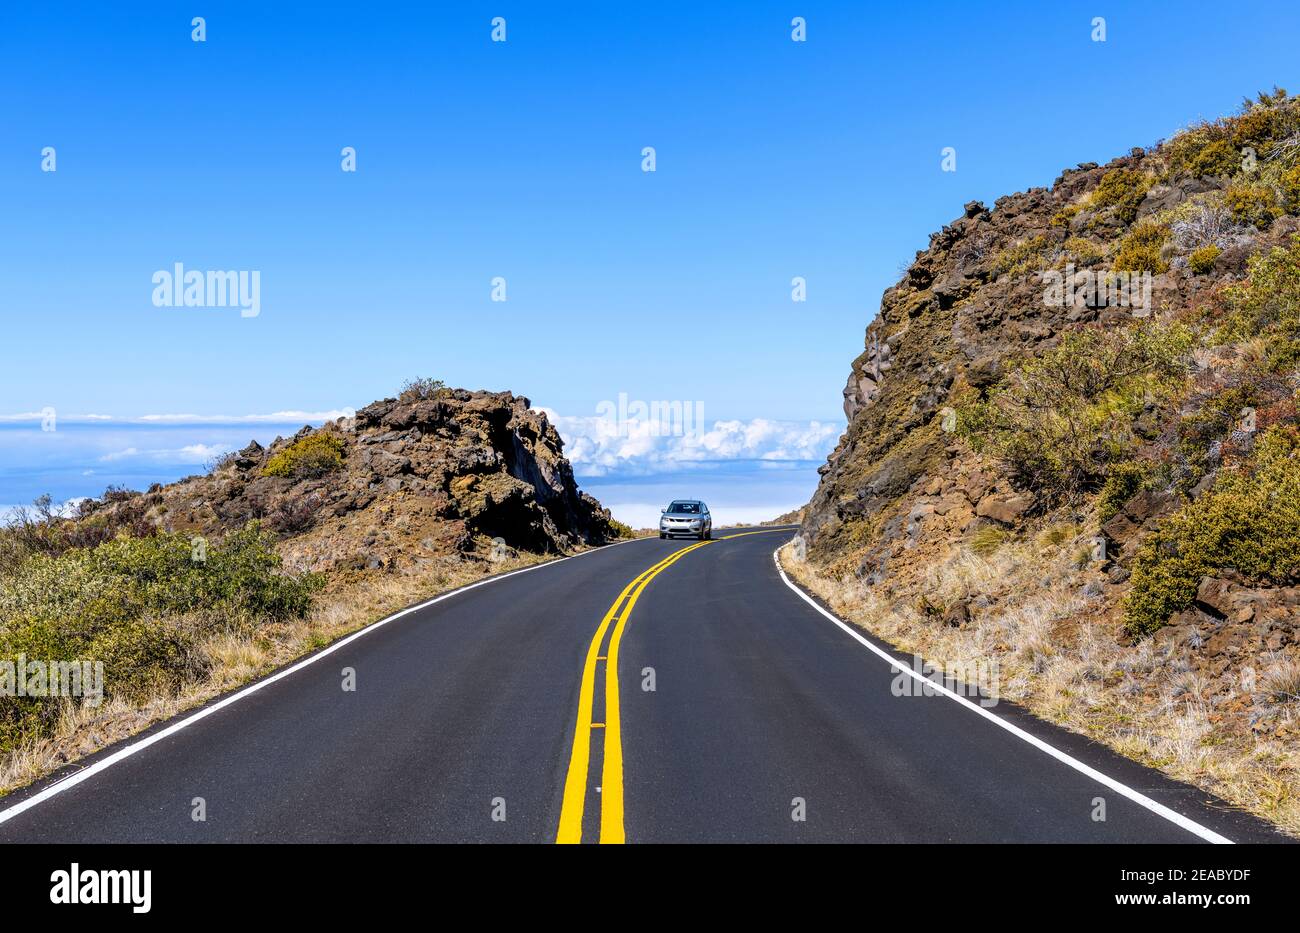 Sinueux Road - UN vus de taille moyenne qui se trouve sur la route sinueuse Haleakala Highway dans le parc national Haleakala au cours d'un après-midi ensoleillé. Maui, Hawaï, États-Unis. Banque D'Images